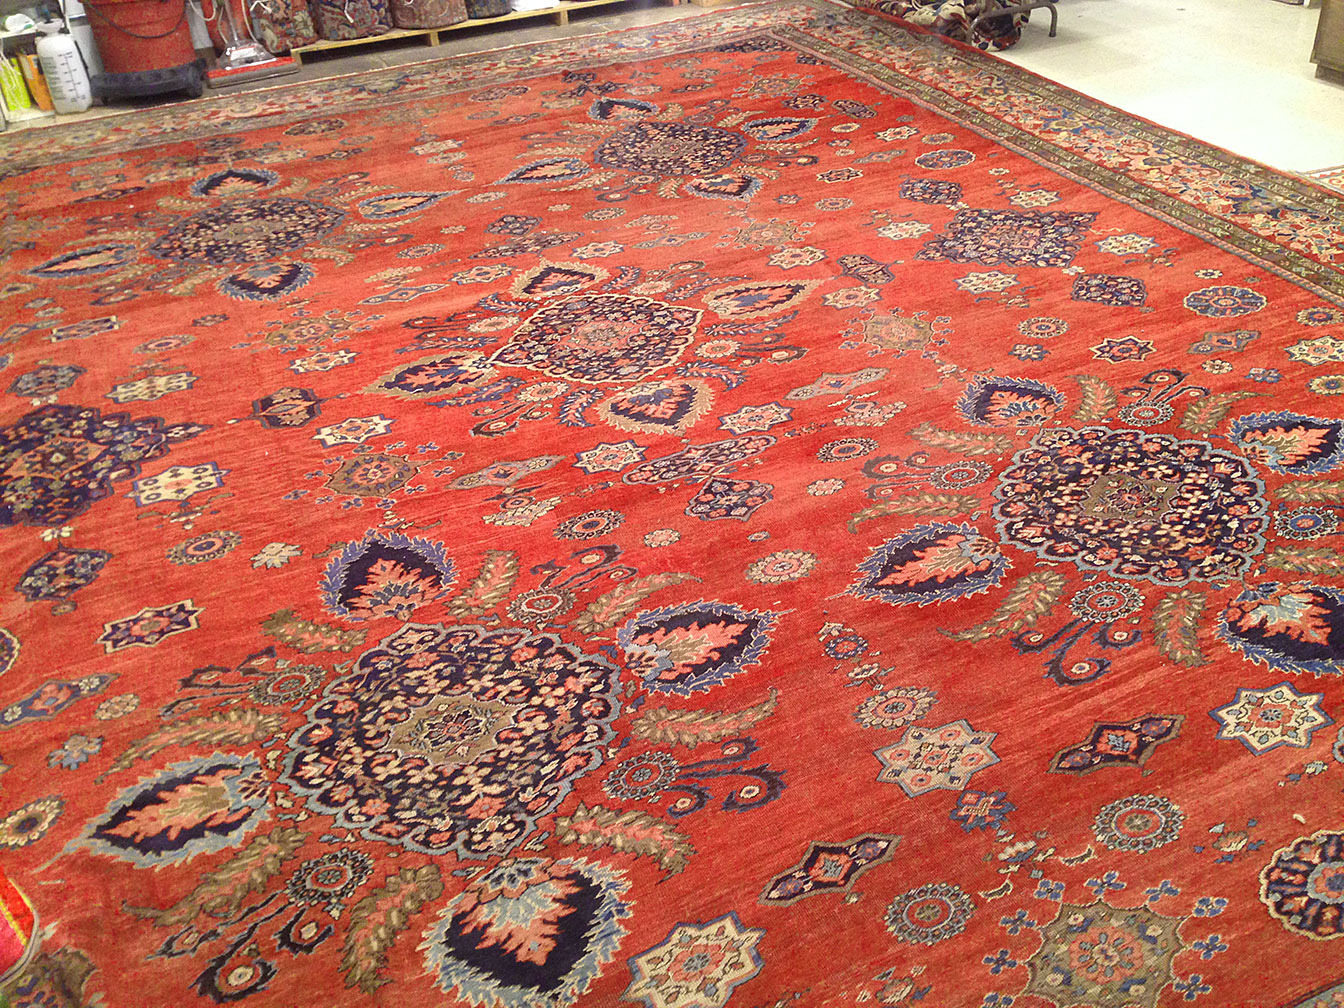 Antique sultan abad Carpet - # 50306